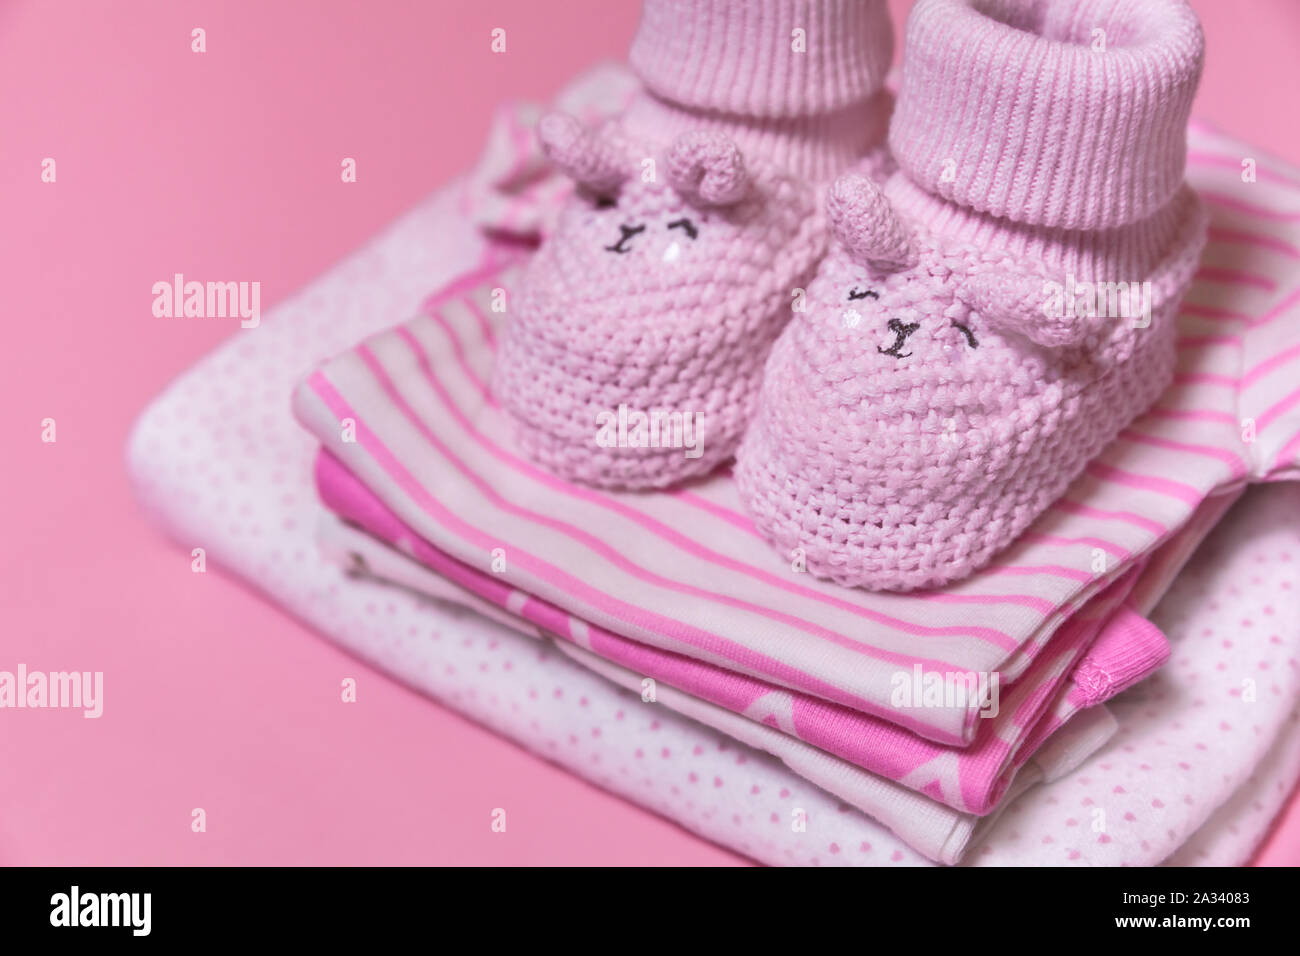 Ropa de bebé y ganchillo zapatos para una niña recién nacida sobre un fondo de color rosa, el embarazo concepto - Imagen Fotografía de stock -